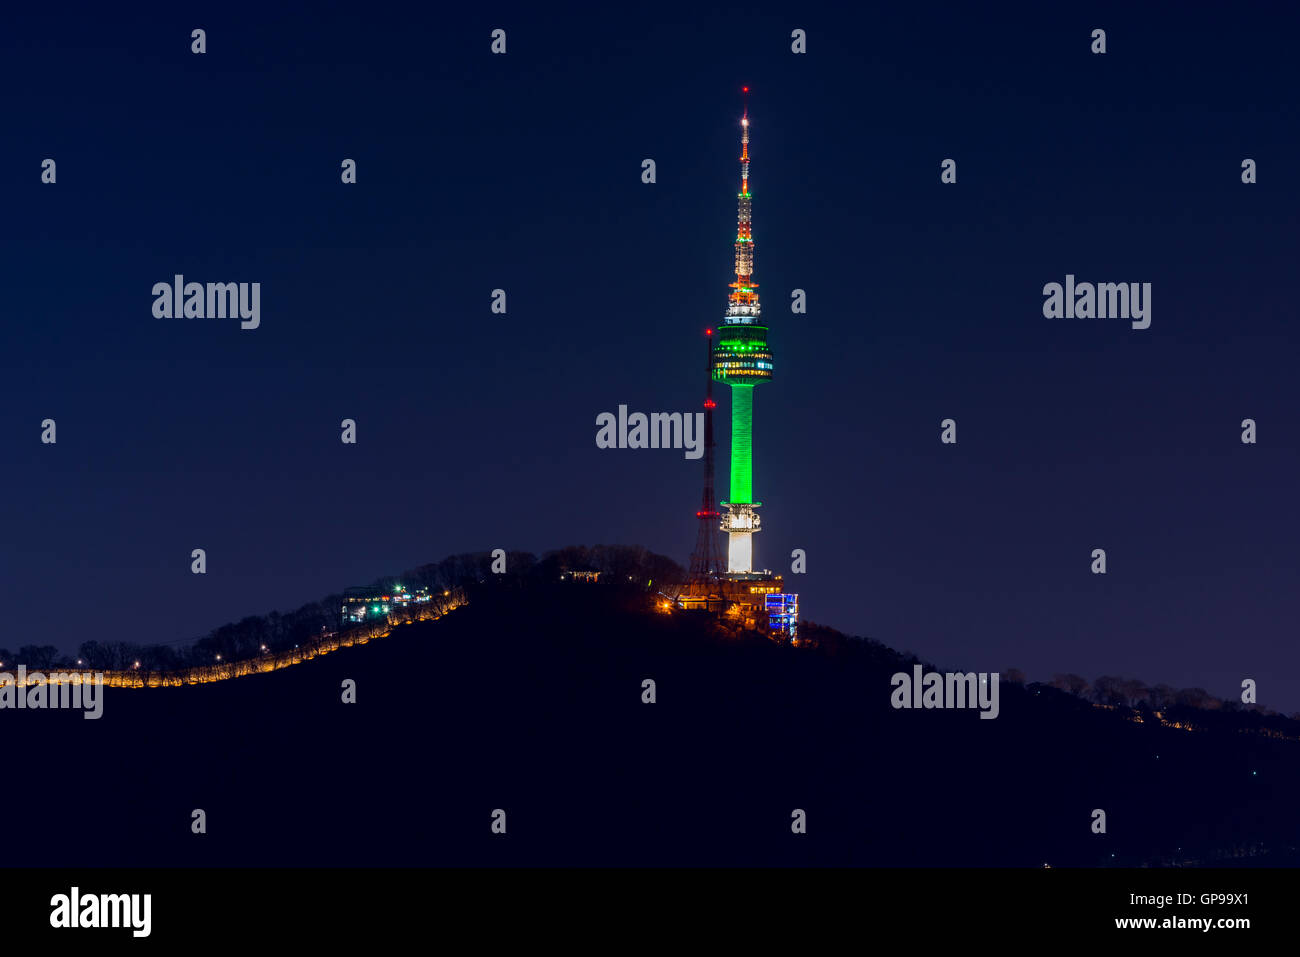 Namsan Mountain,Seoul tower at night in Seoul,South Korea. Stock Photo